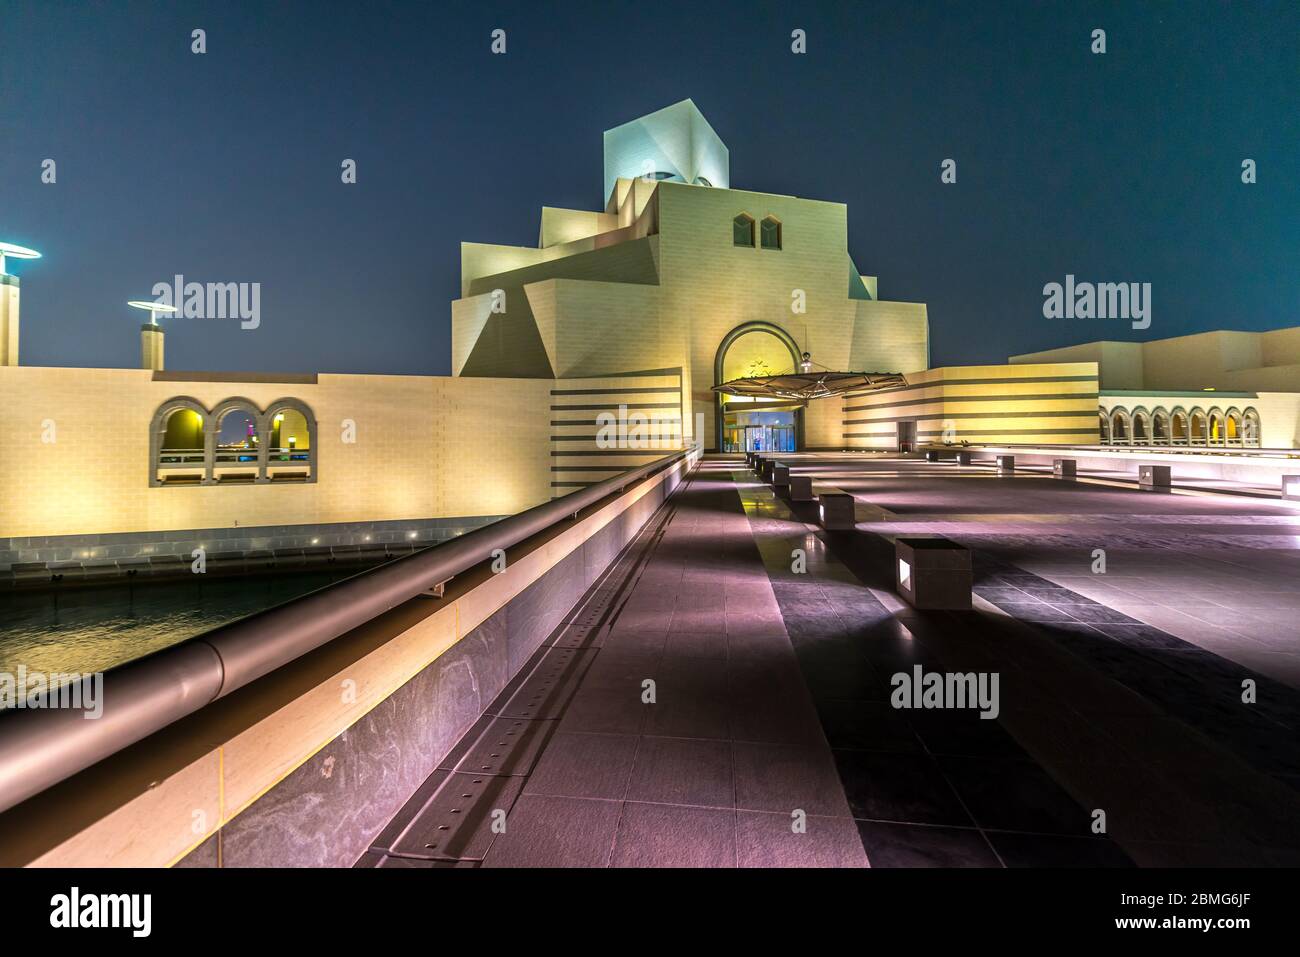 Visita del Museo d'Arte Islamica del Qatar a Doha che si specchiano in acqua di stagno di notte. Architettura futuristica vicino alla baia di Doha. Foto Stock